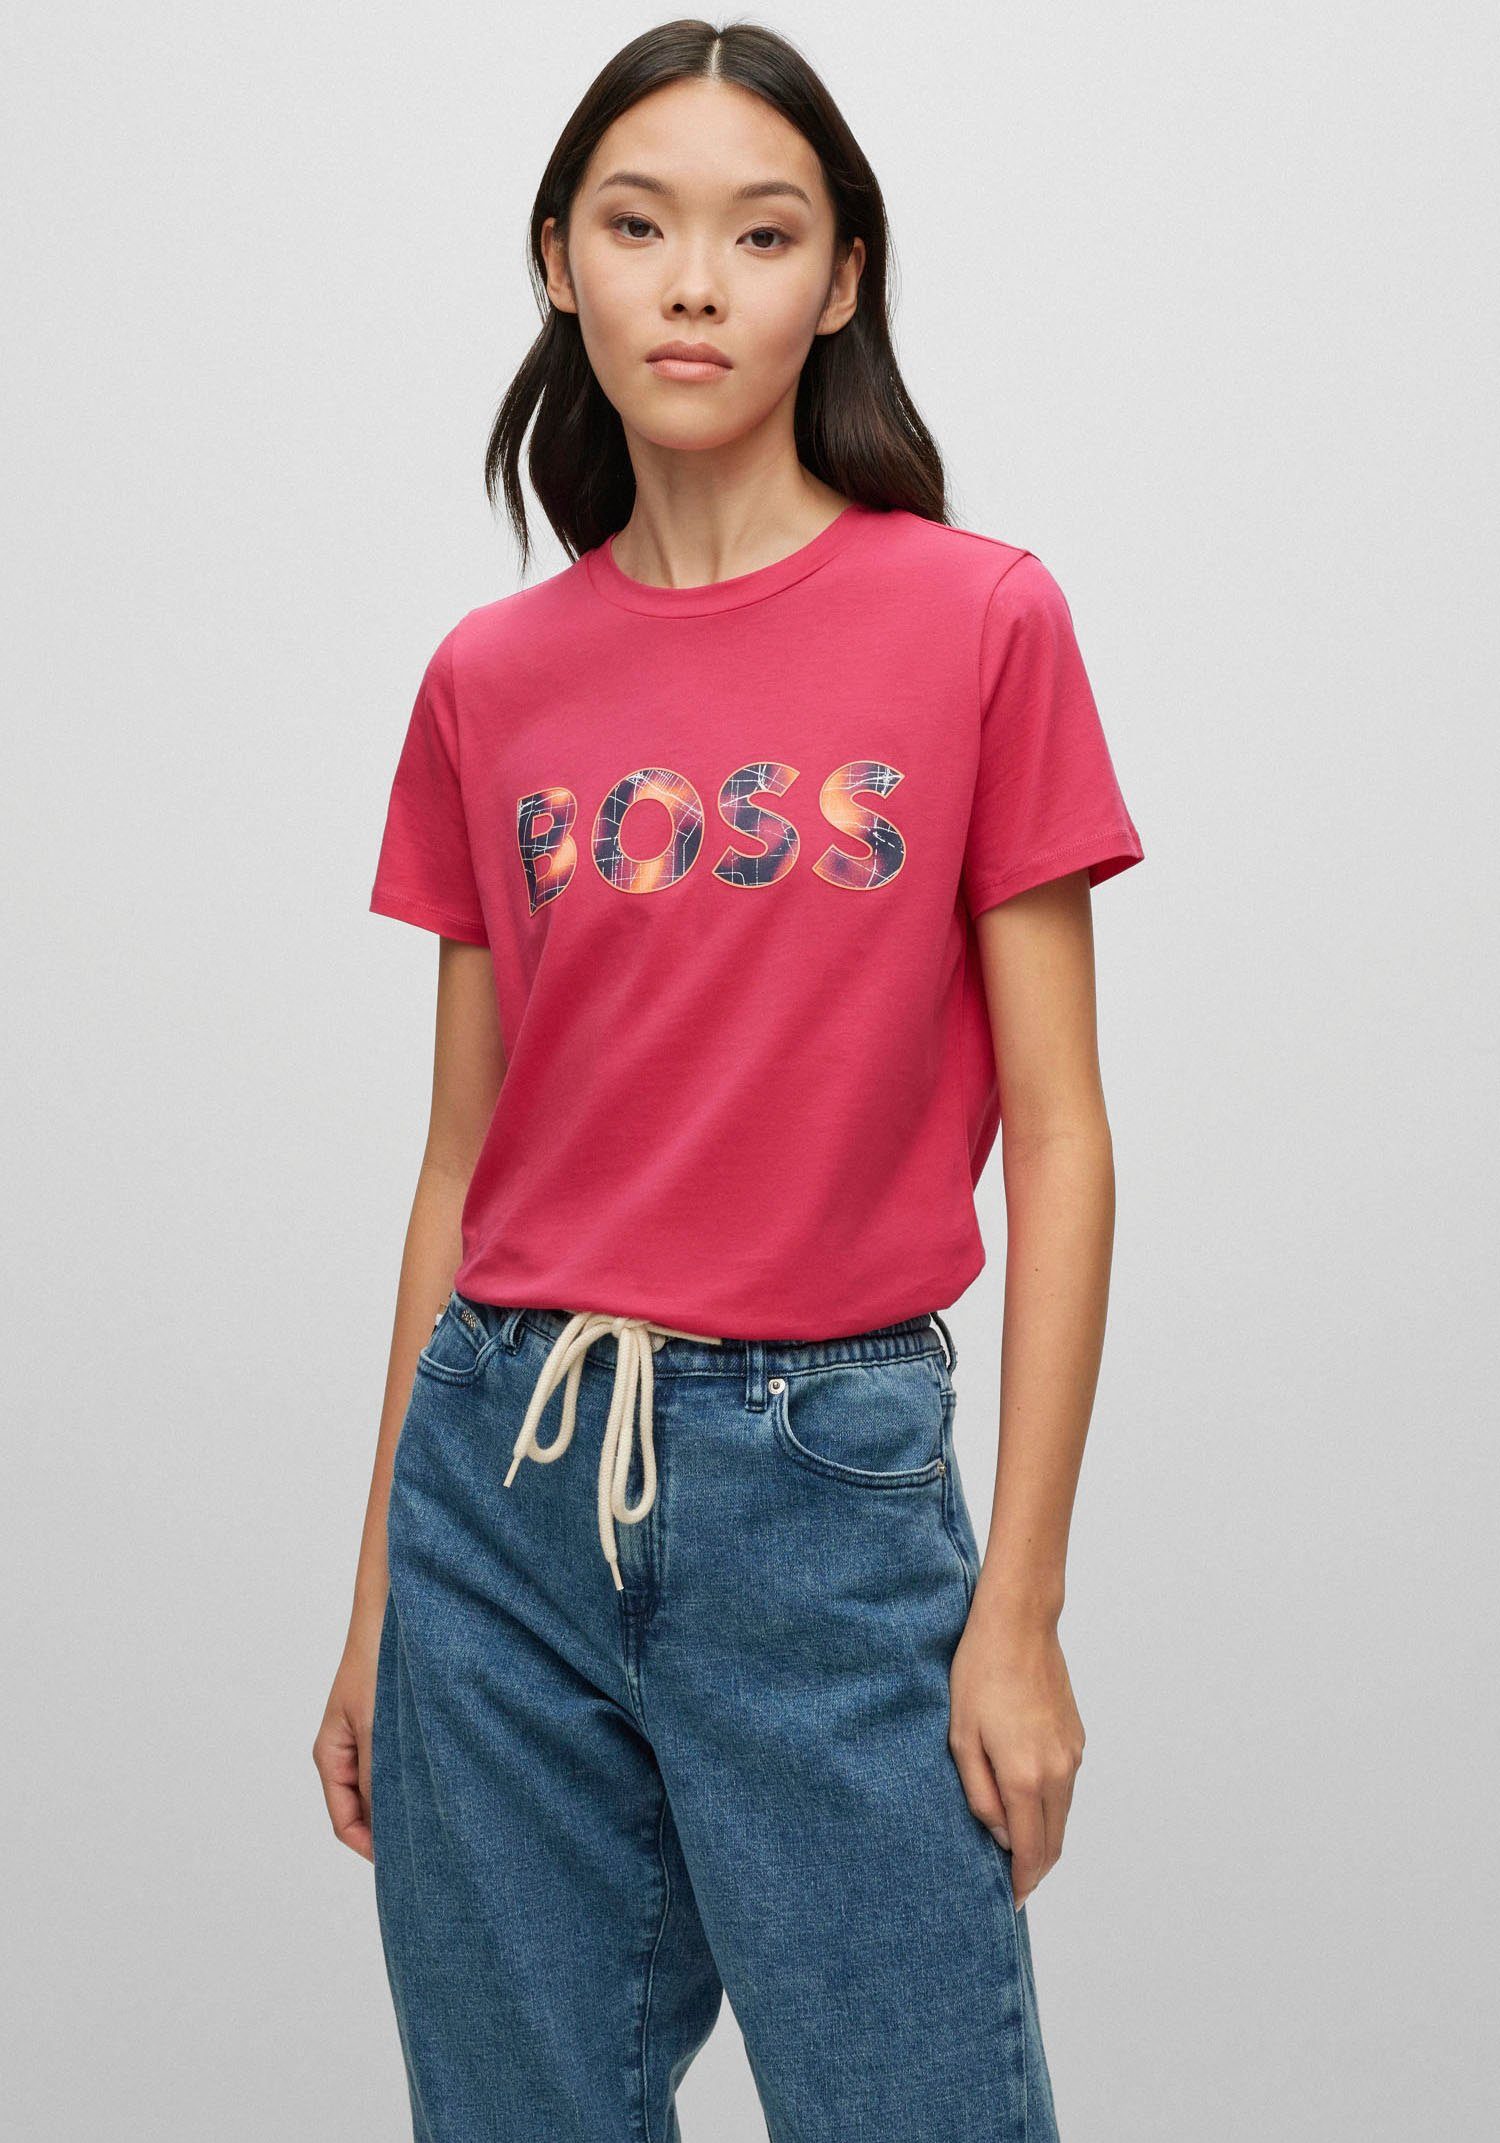 Hugo Boss Damen T-Shirts online kaufen | OTTO